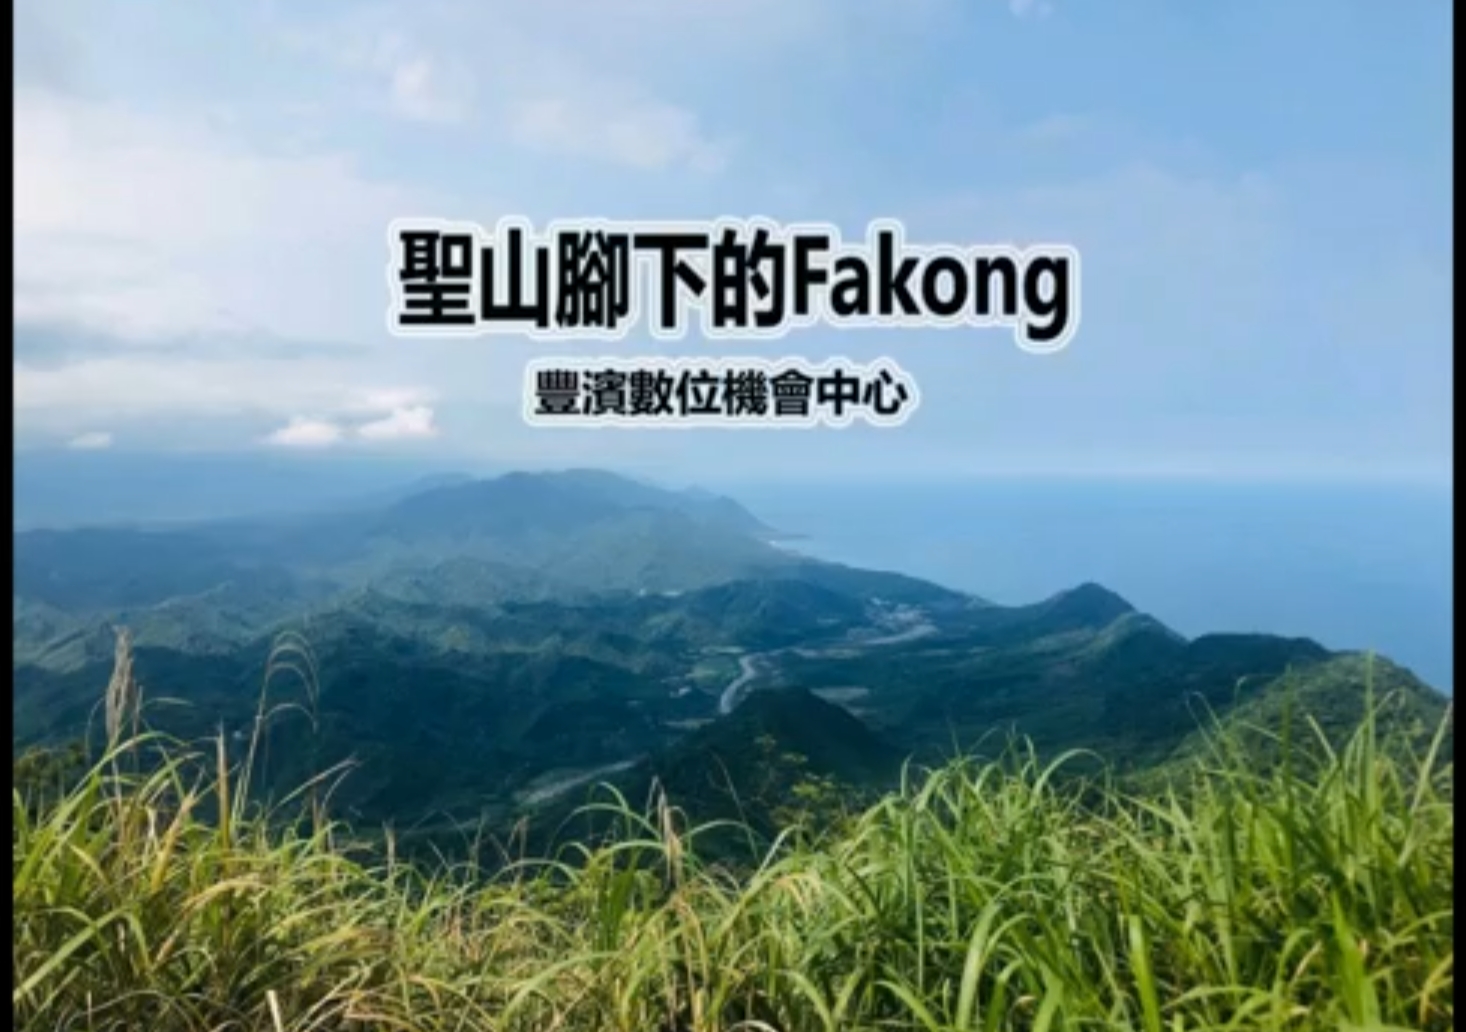 聖山腳下的Fakong-封面照